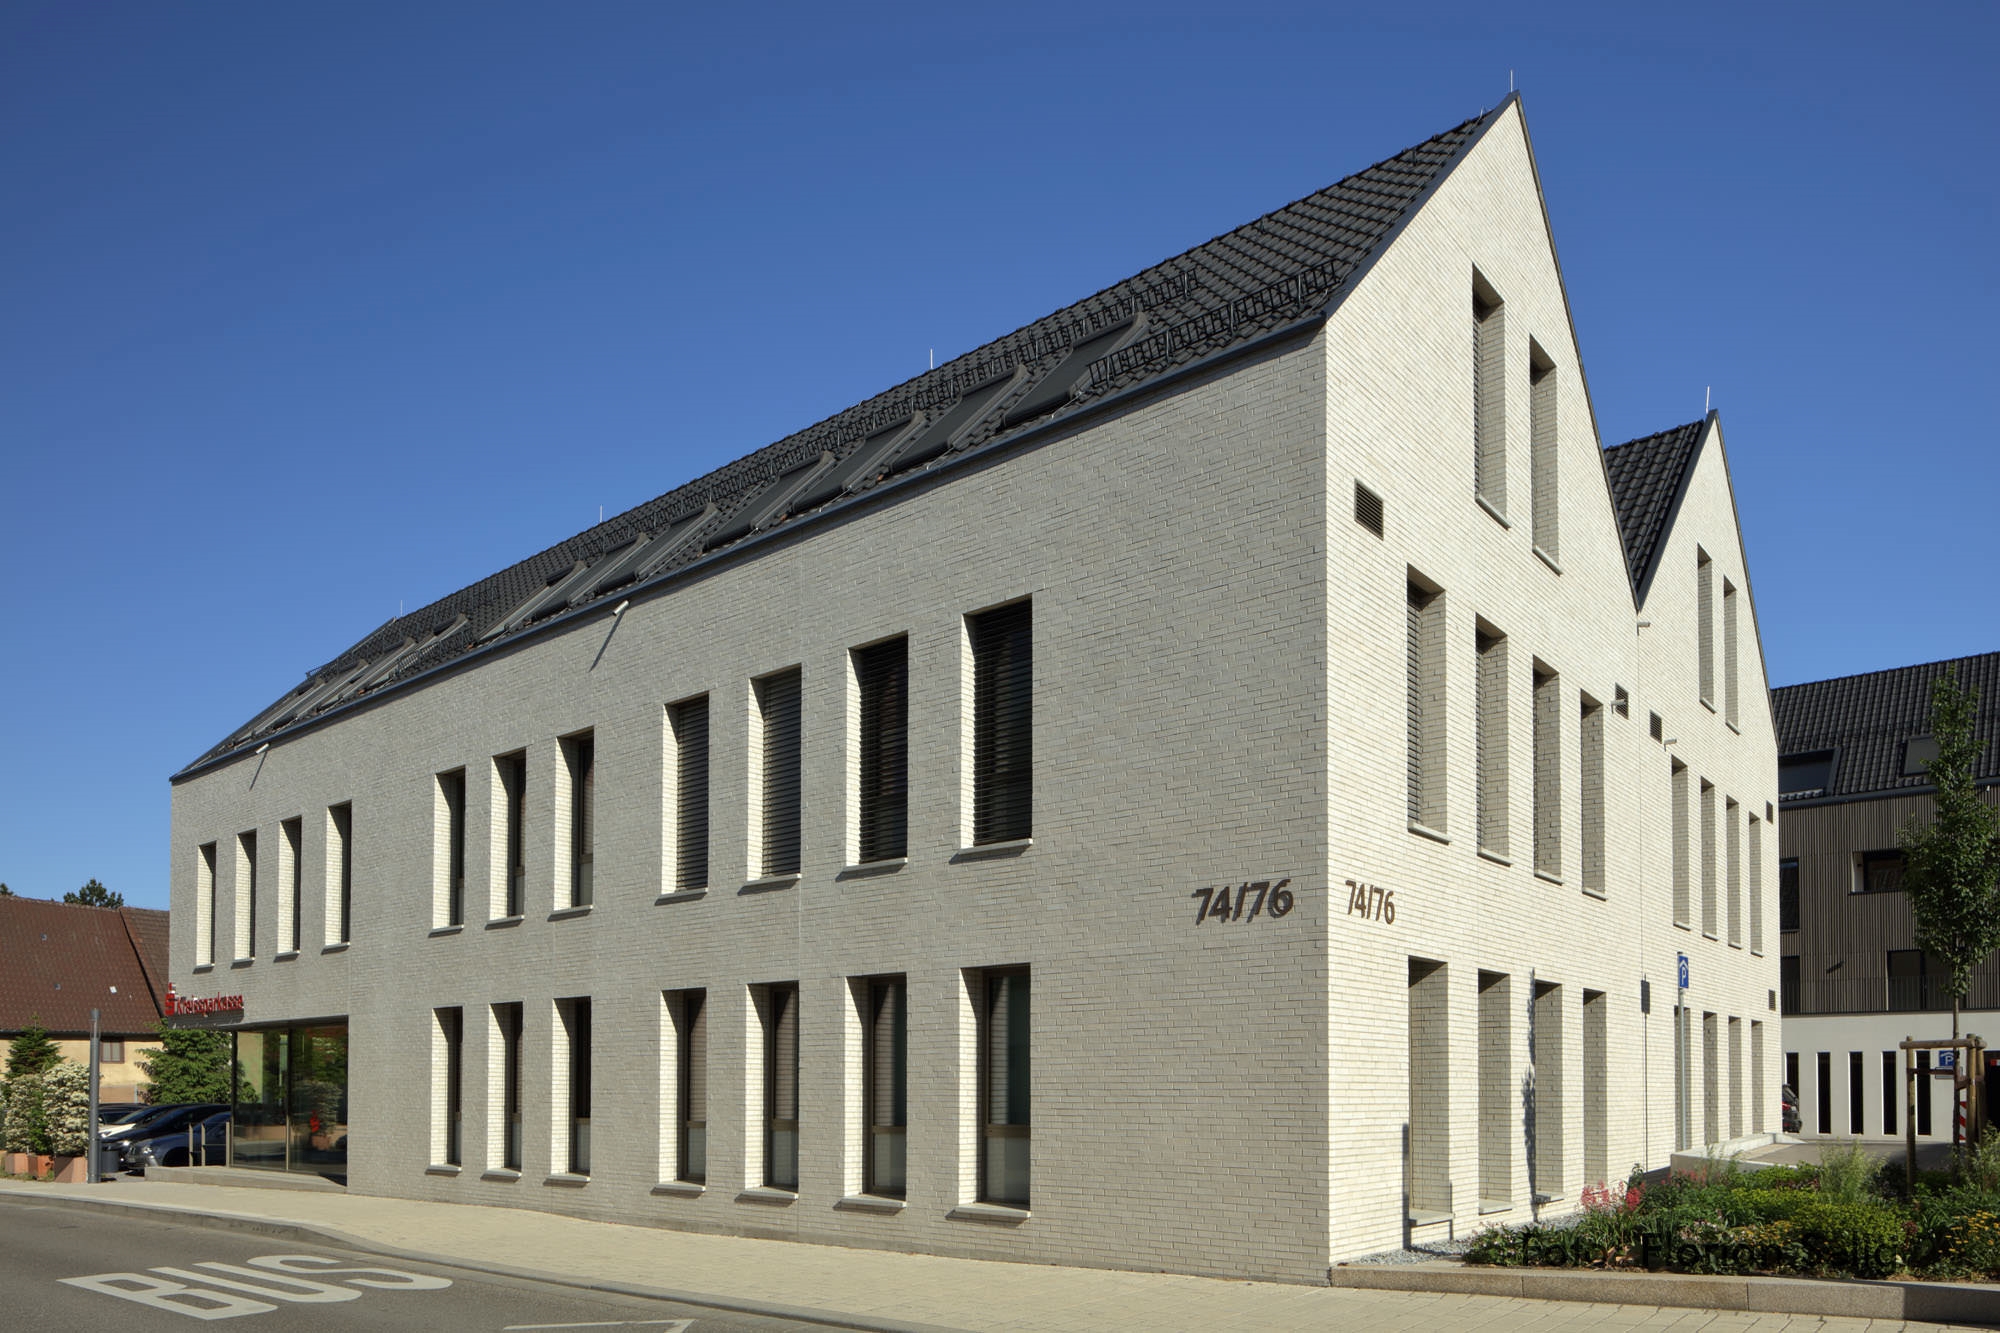 Bürogebäude und Ärztehaus, Ilsfeld